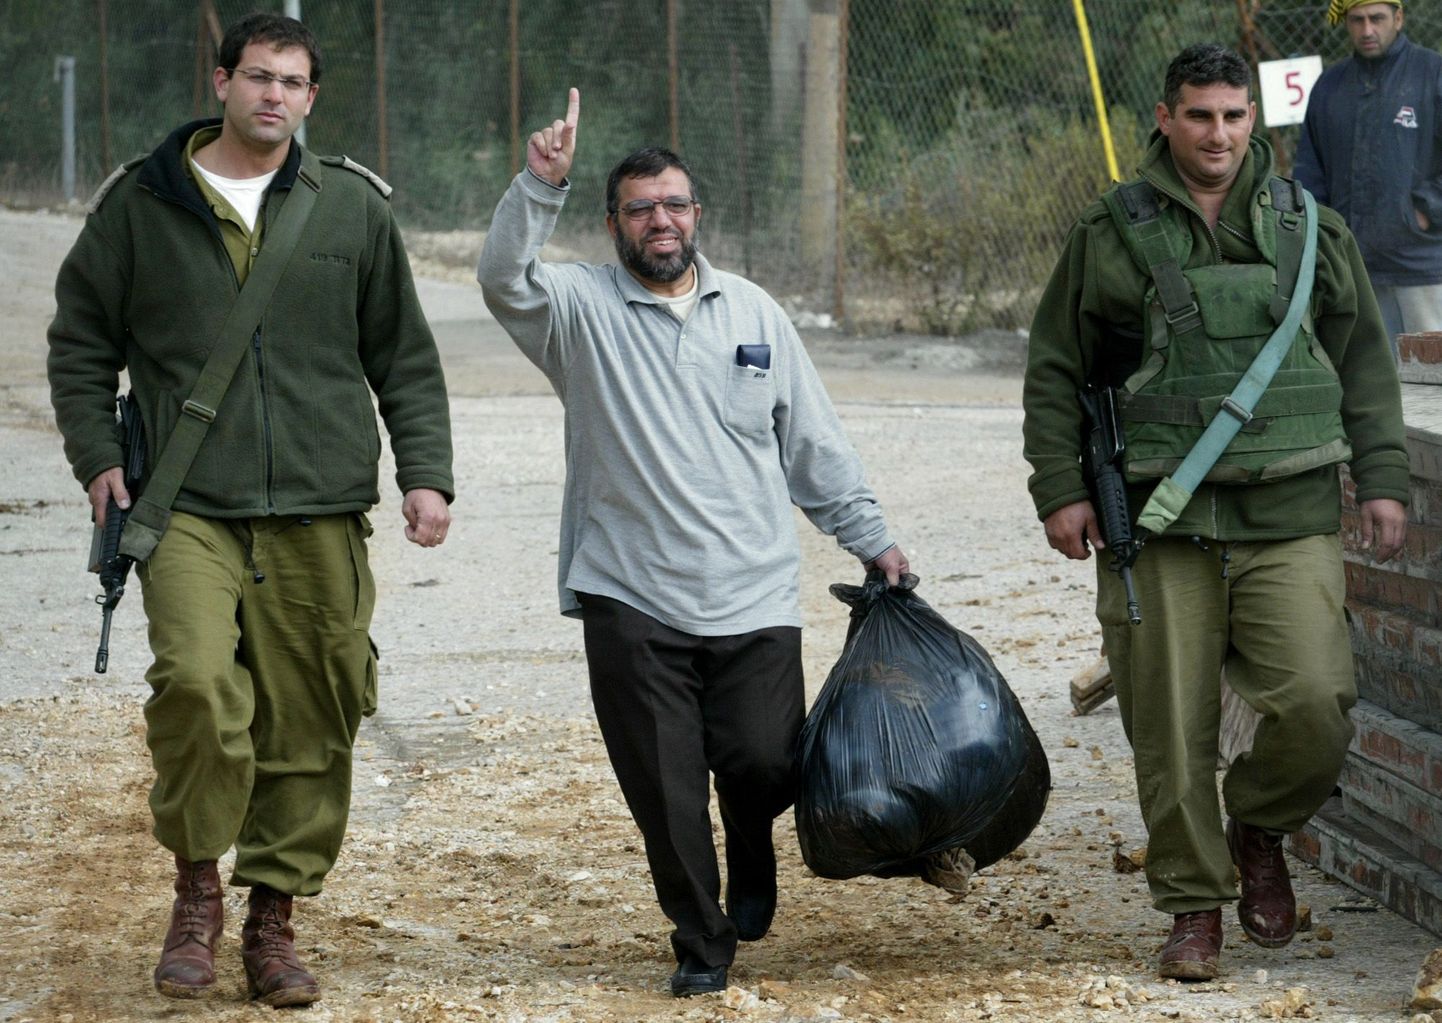 Hamasi kõneisik ja okupeeritud läänekalda alade liider Sheik Hassan Yousef kõndimas Iisraeli sõdurite saatel sõjaväevanglast välja.